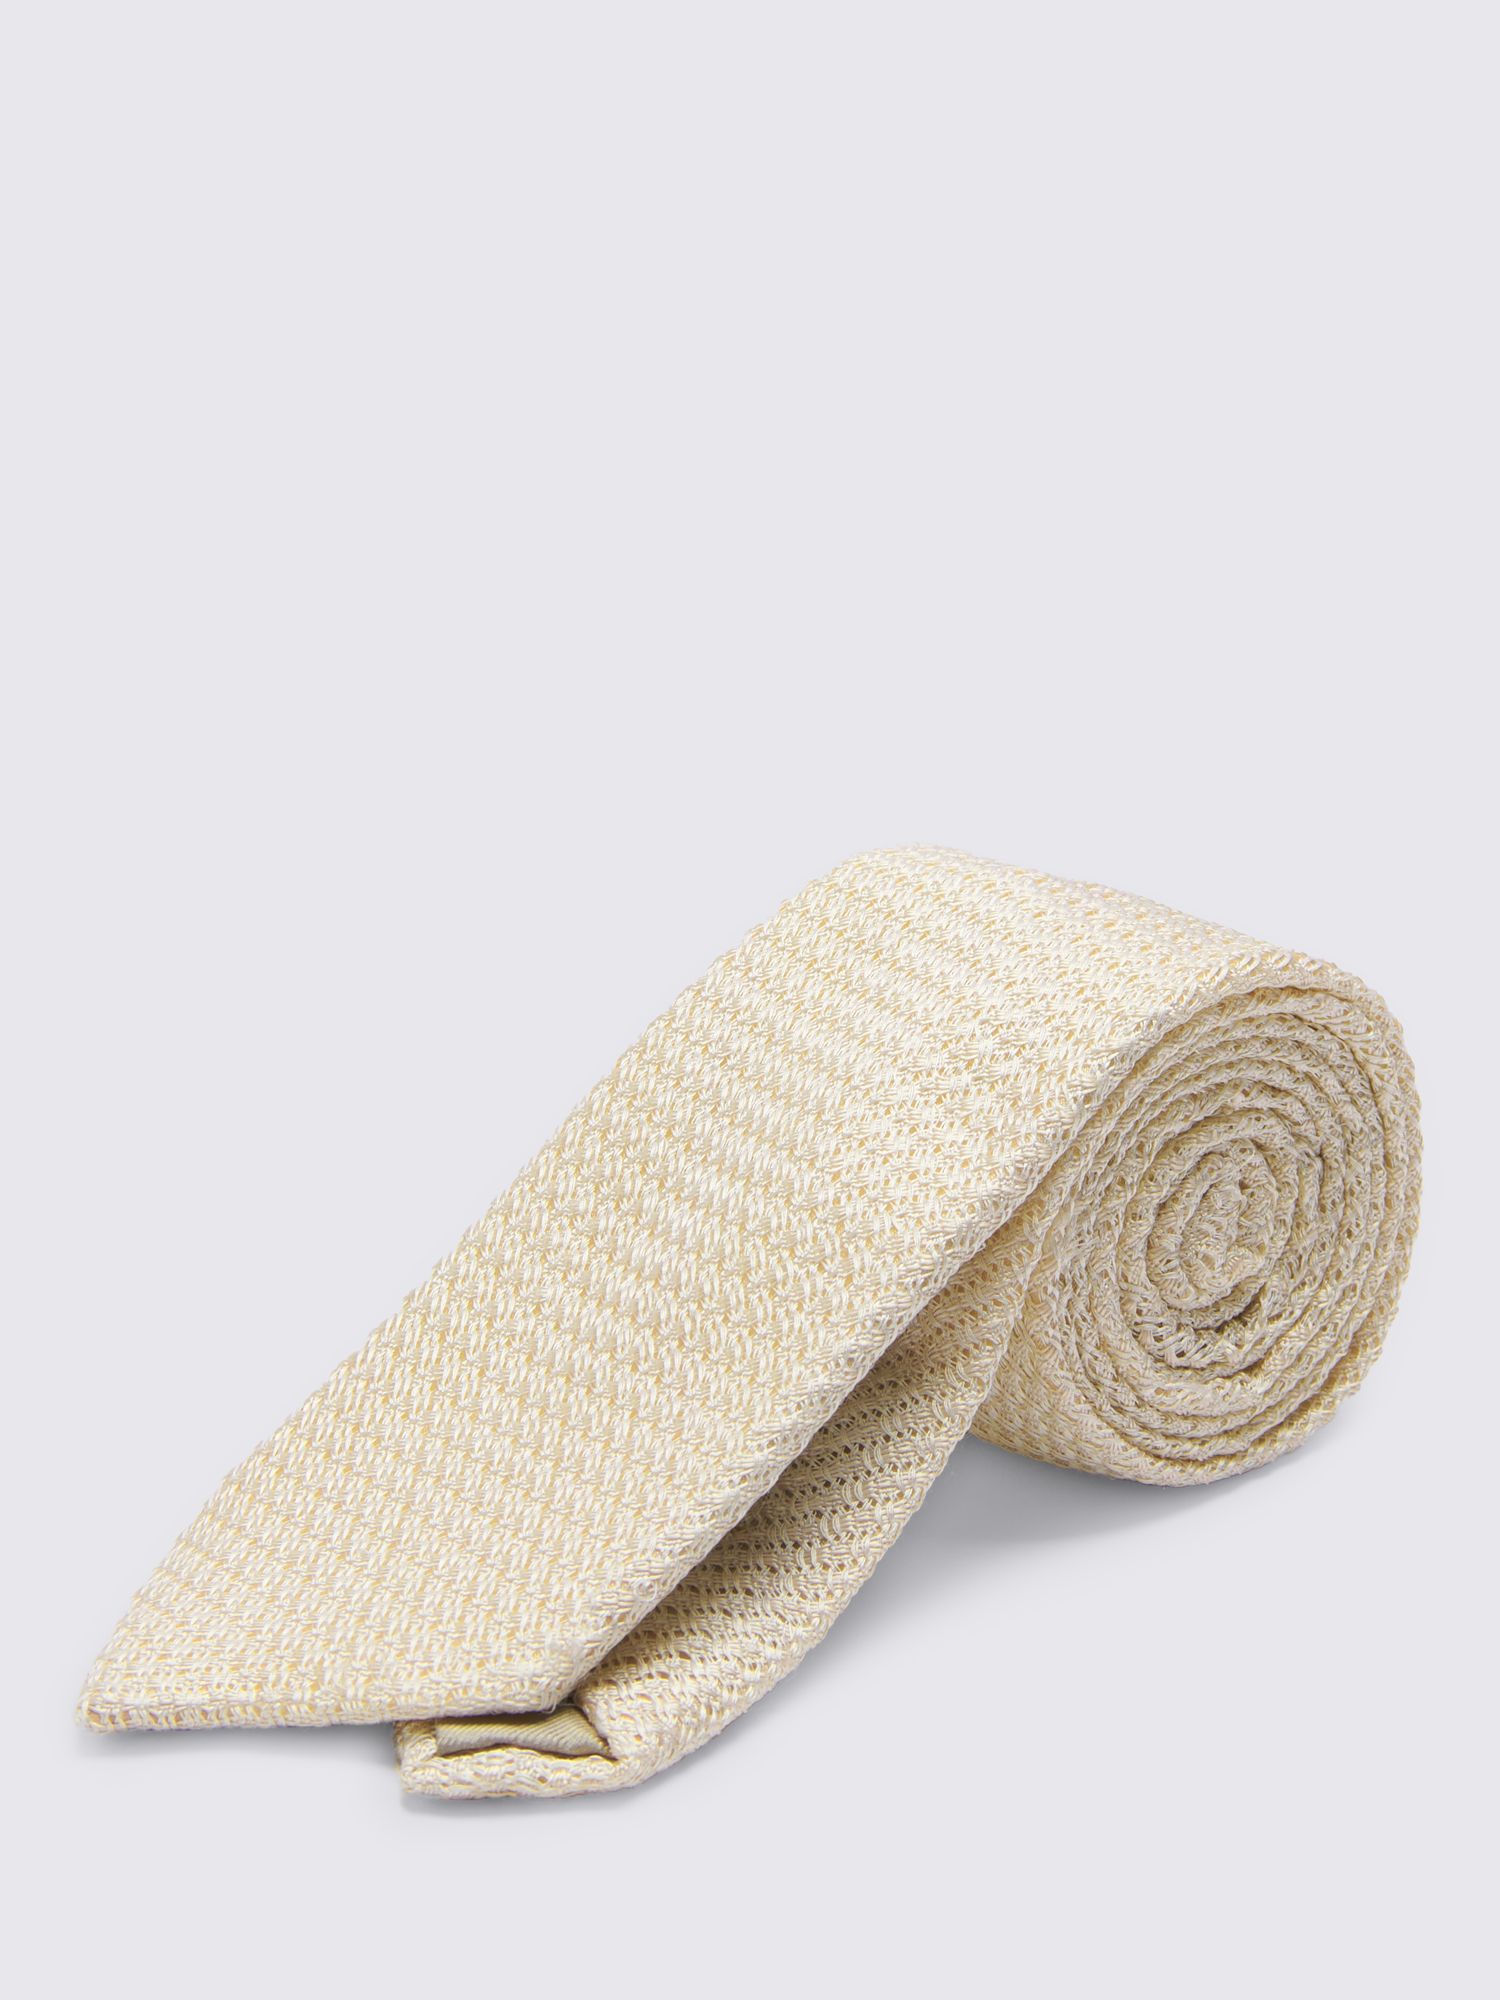 Moss Textured Tie, Beige at John Lewis & Partners